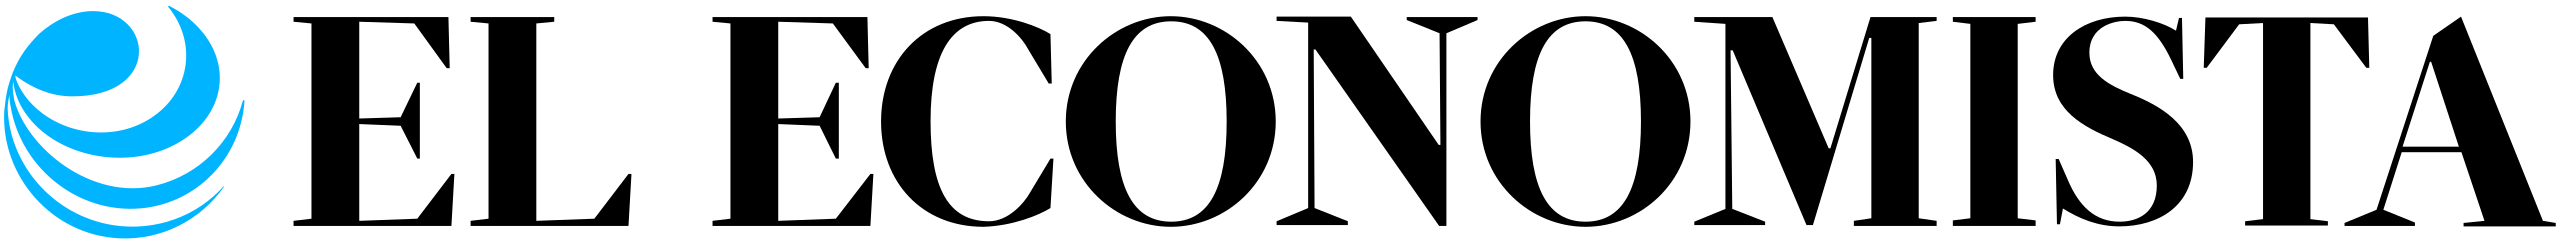 El Economista logo